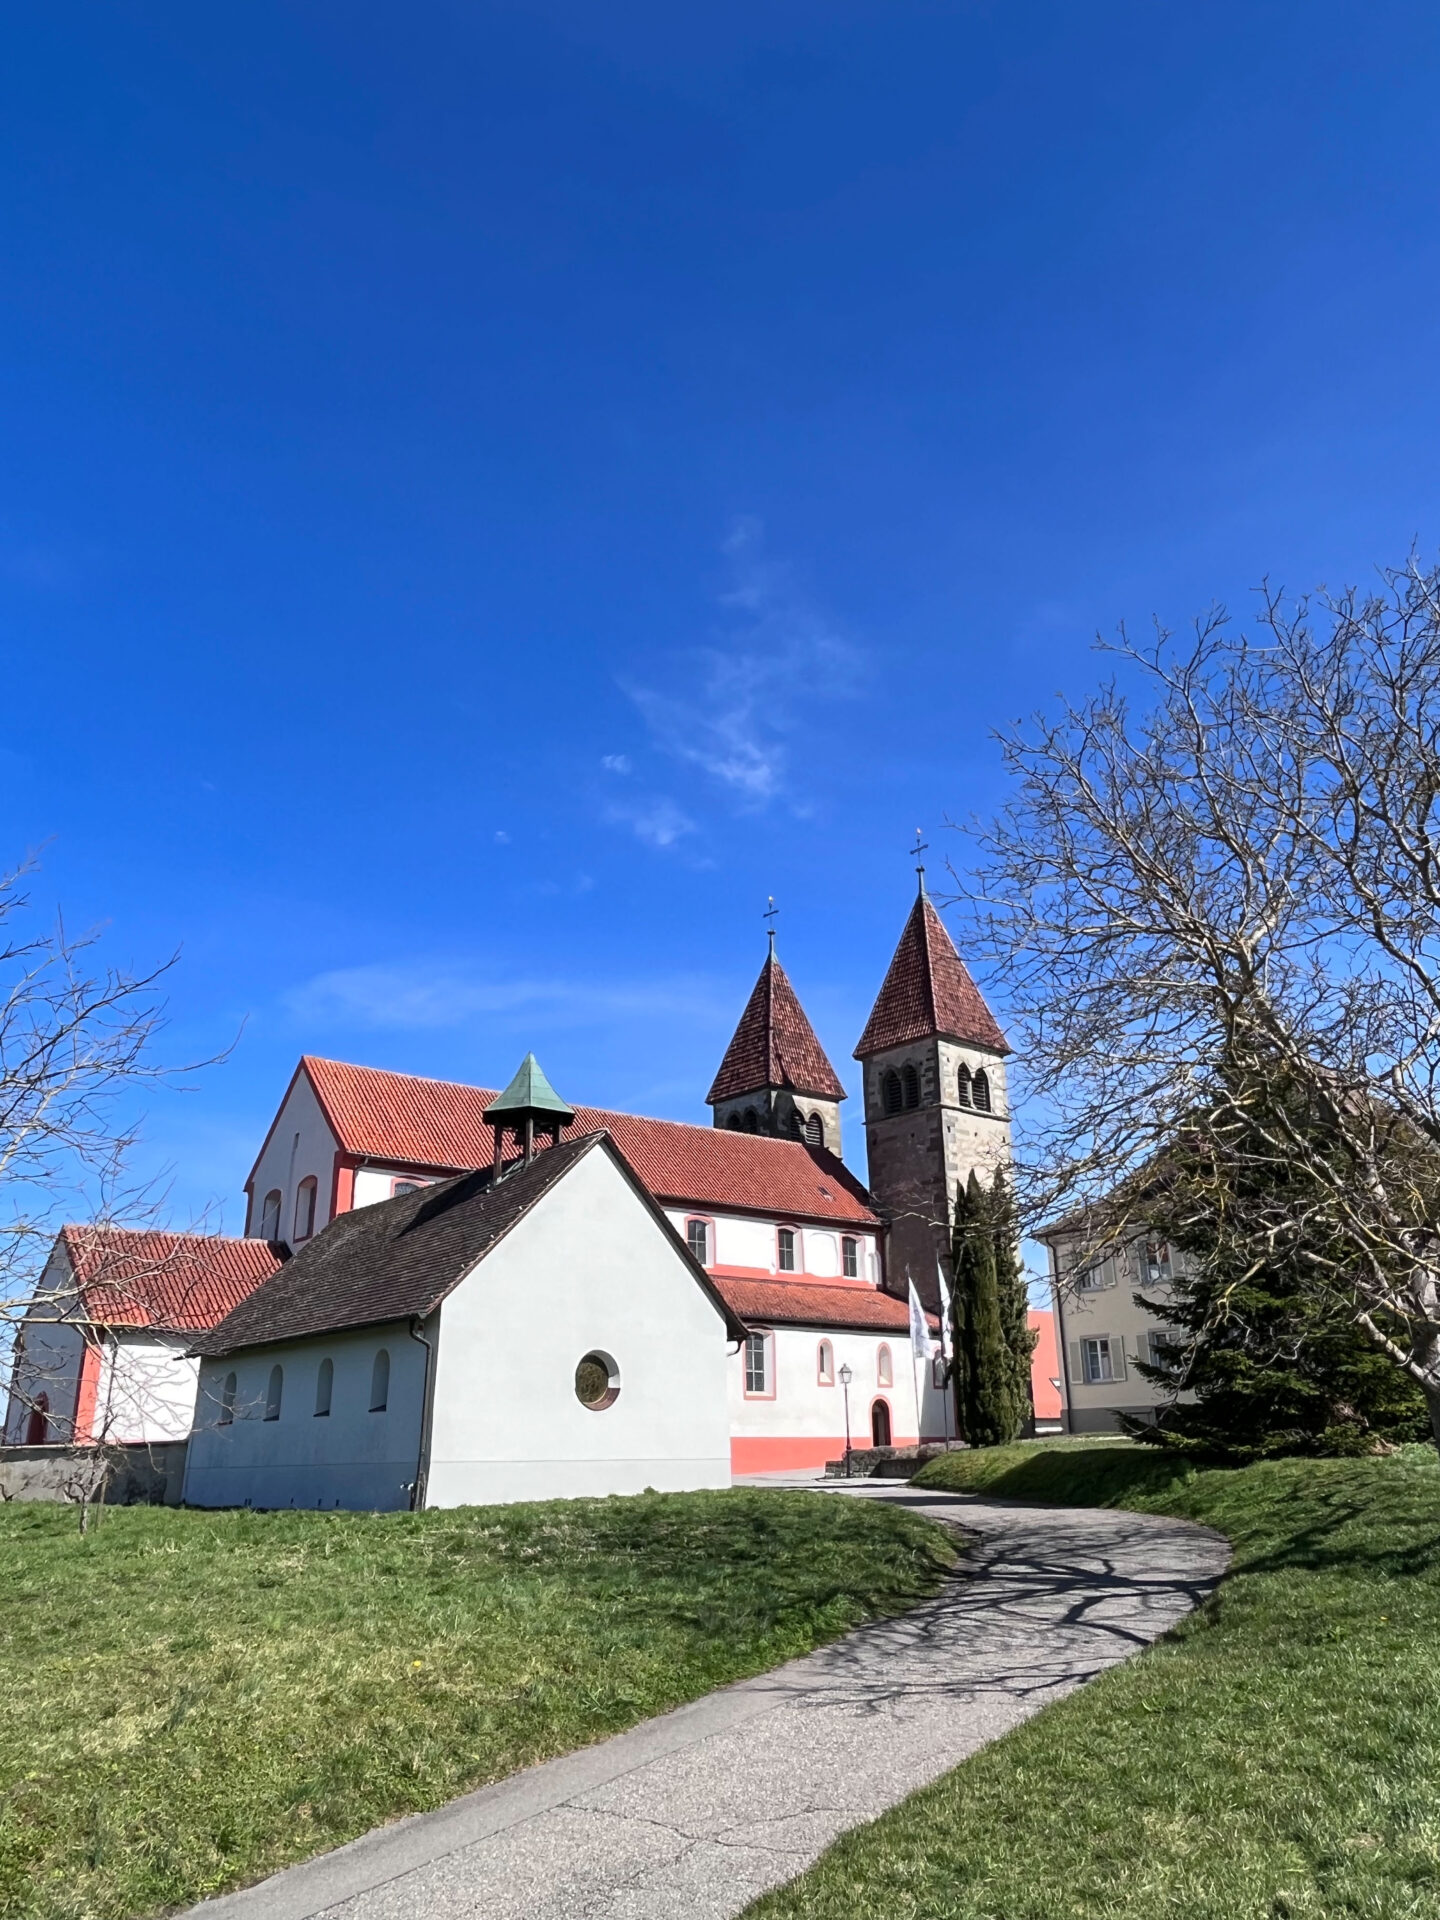 St. Georg von außen Niederzell Kultur Insel Reichenau